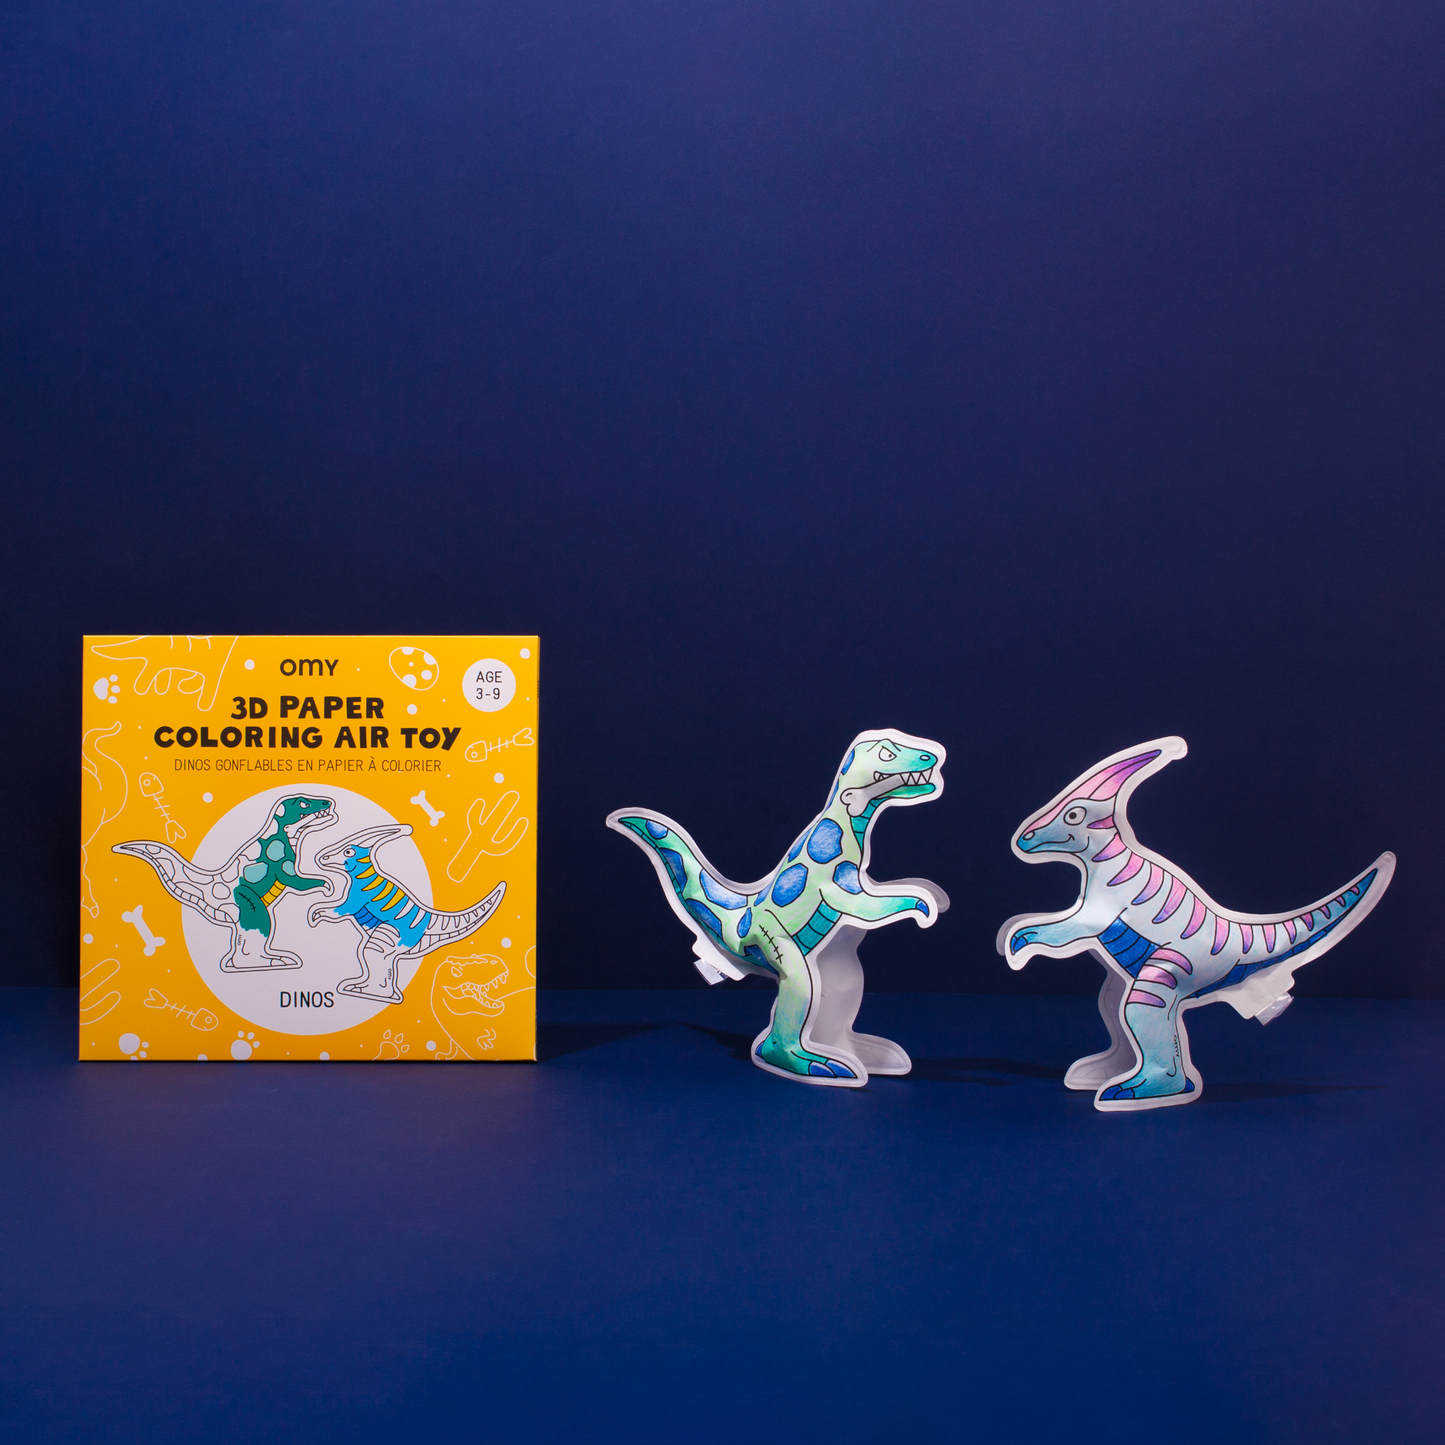 Dinos - Air toy